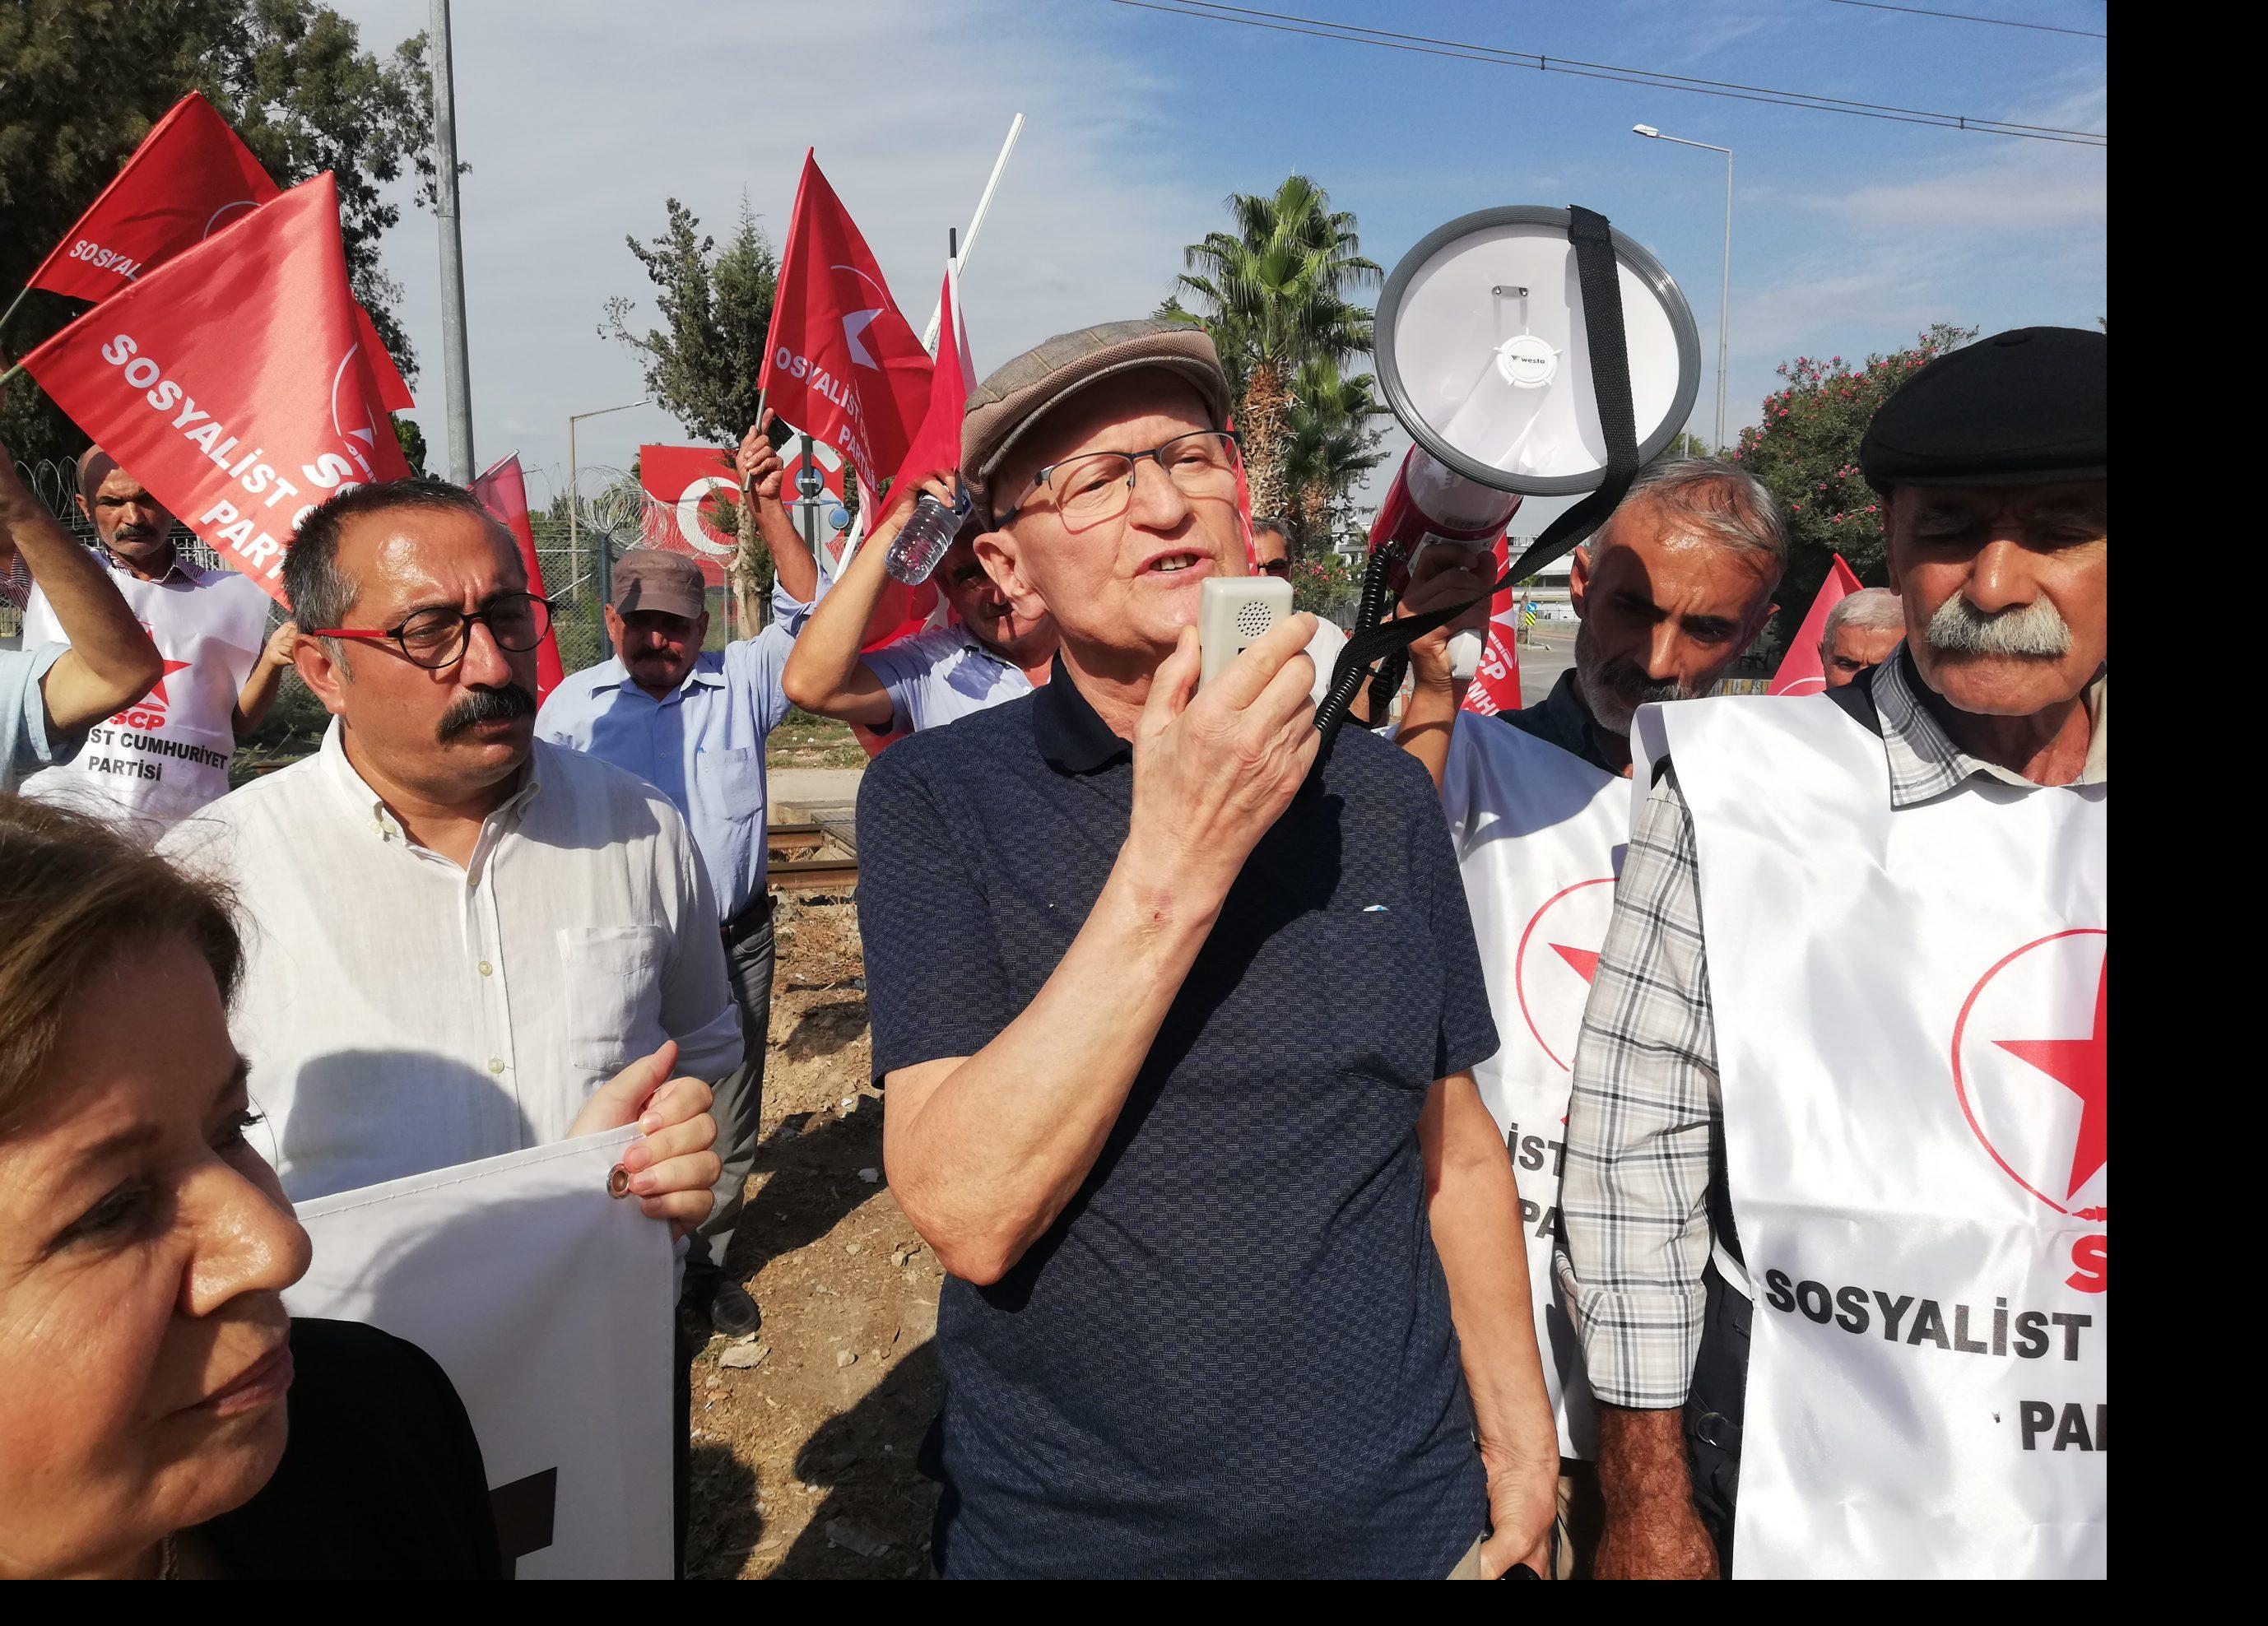 SCP Adana Ve Mersin Yöneticileri İncirlik Önündeydi